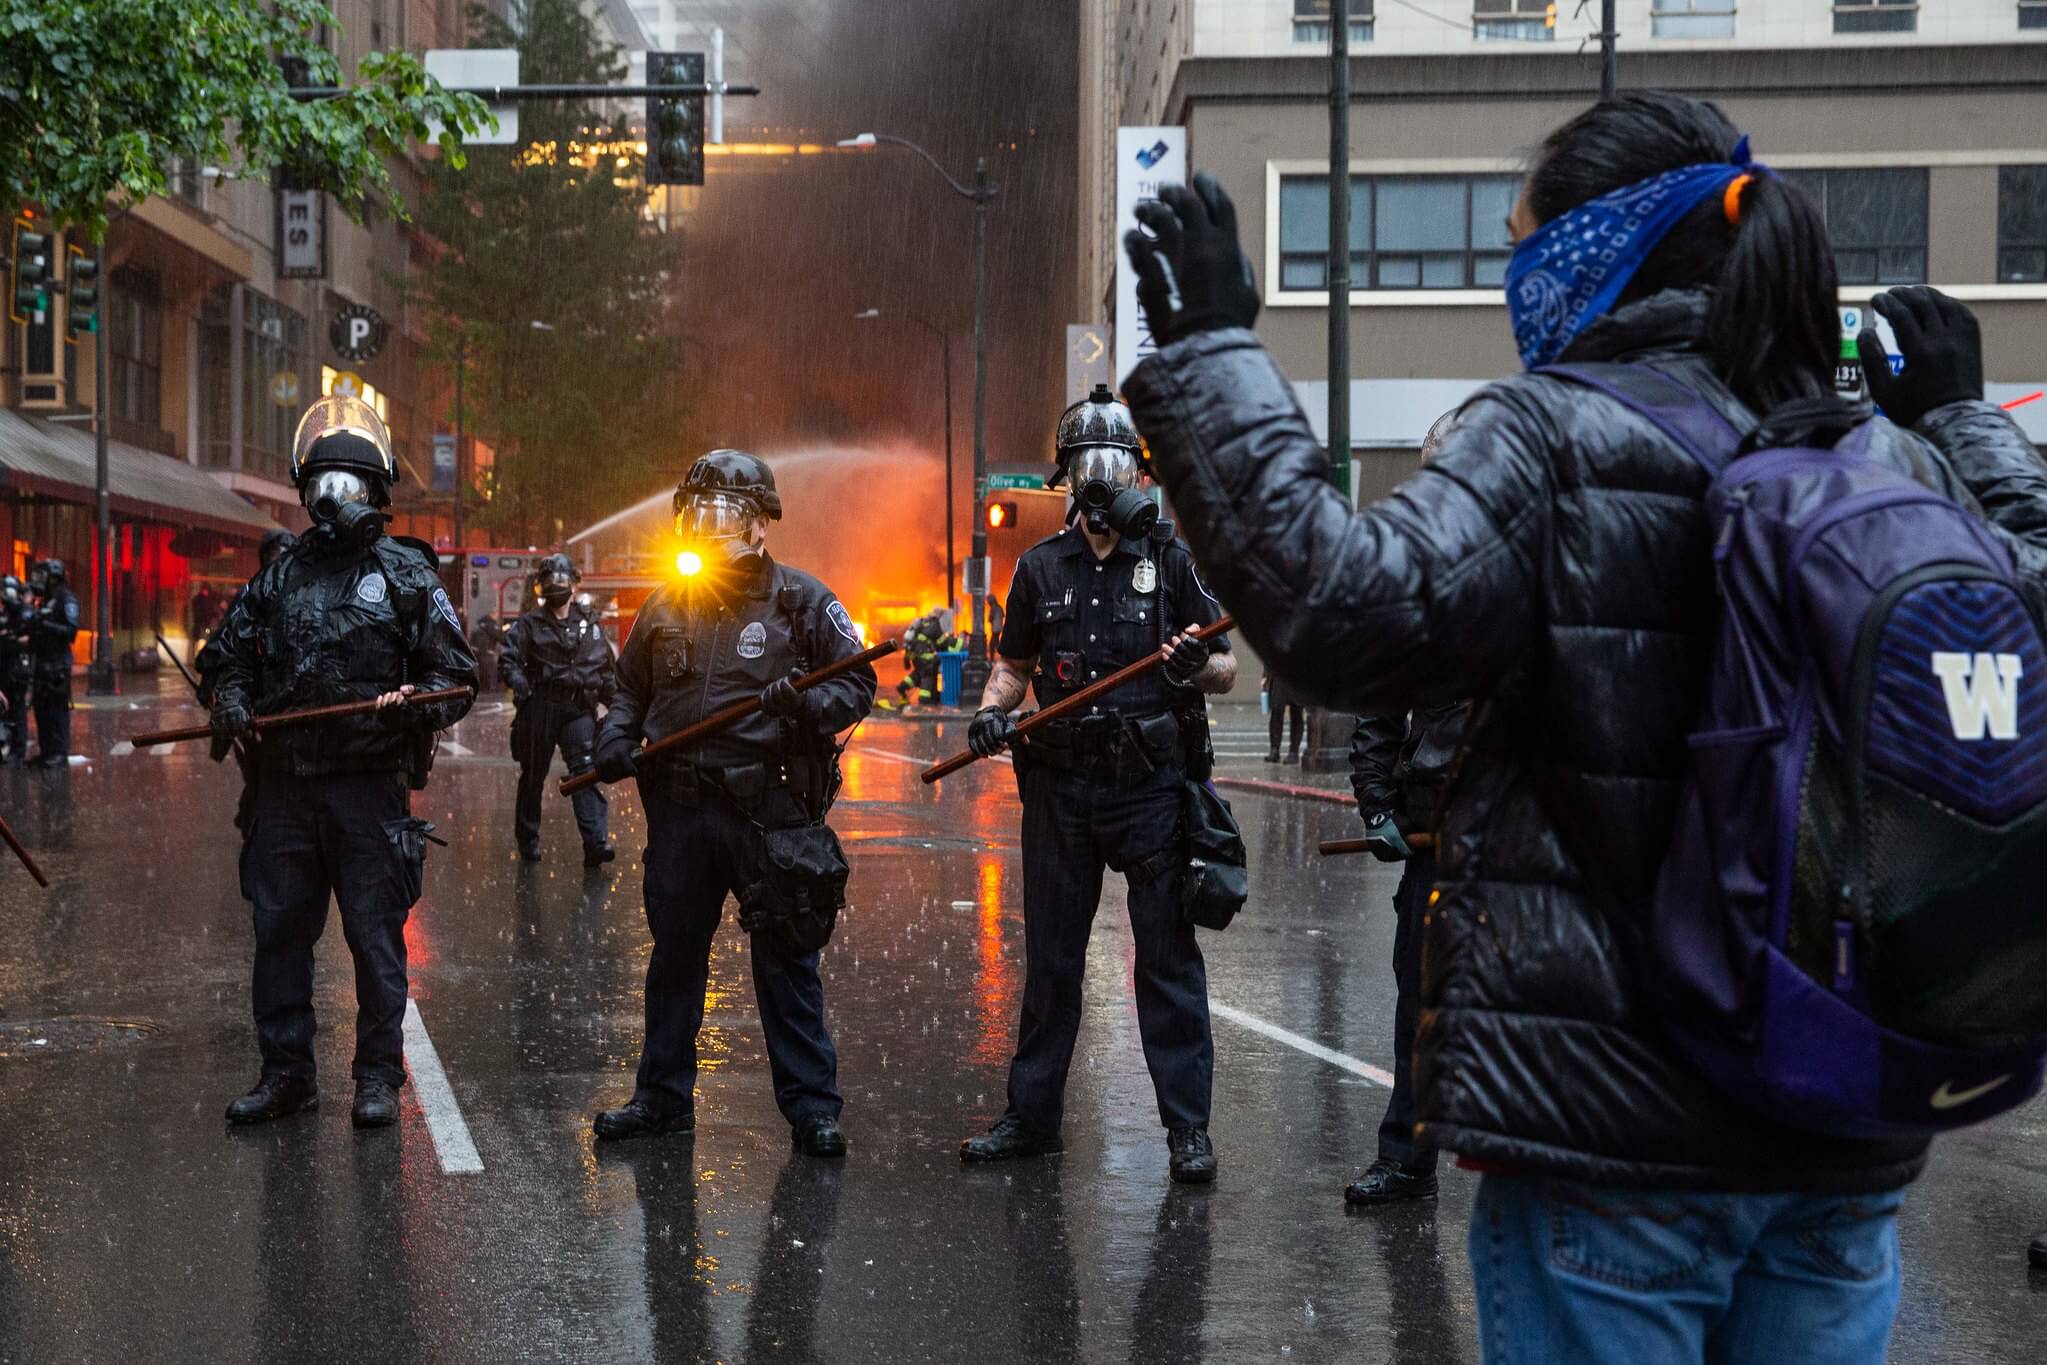 BLM-protesten in Seattle, 2020. Sommigen grepen de protesten aan om geweld te plegen en vernielingen aan te richten, een belangrijk verkiezingsthema. © Flickr / Kelly Kline